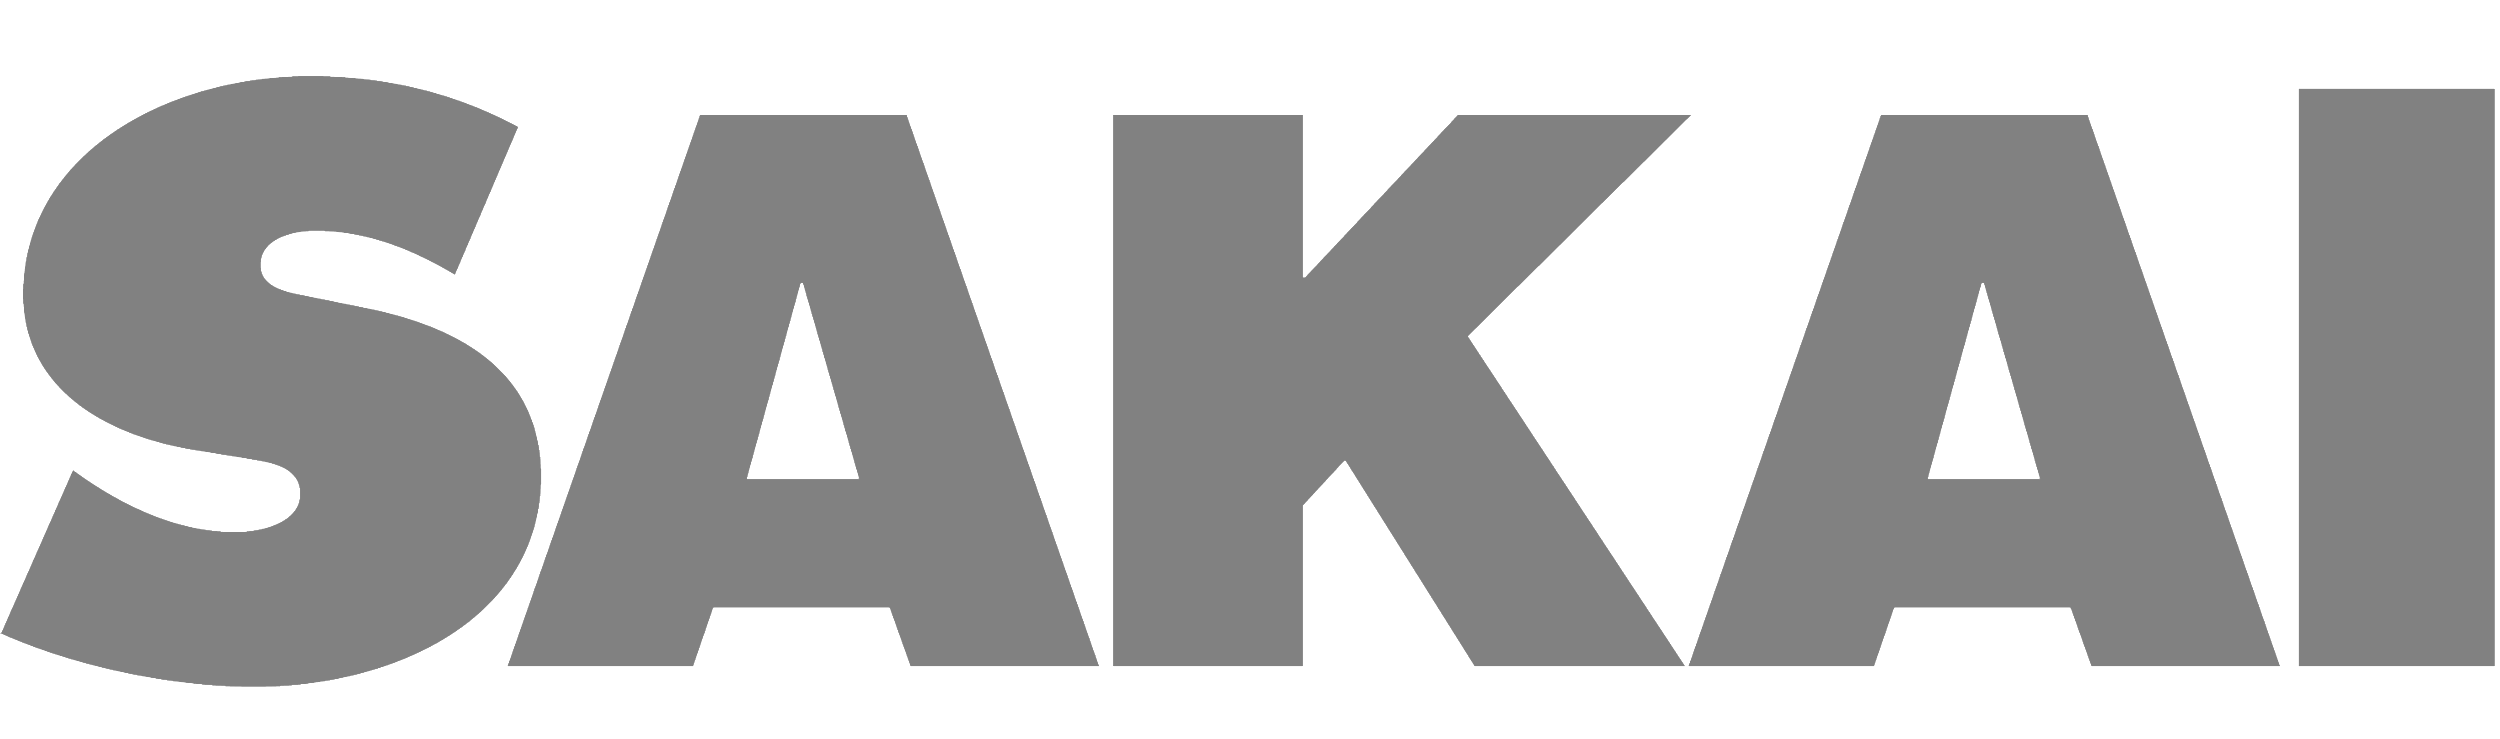 Sakai Logo.png